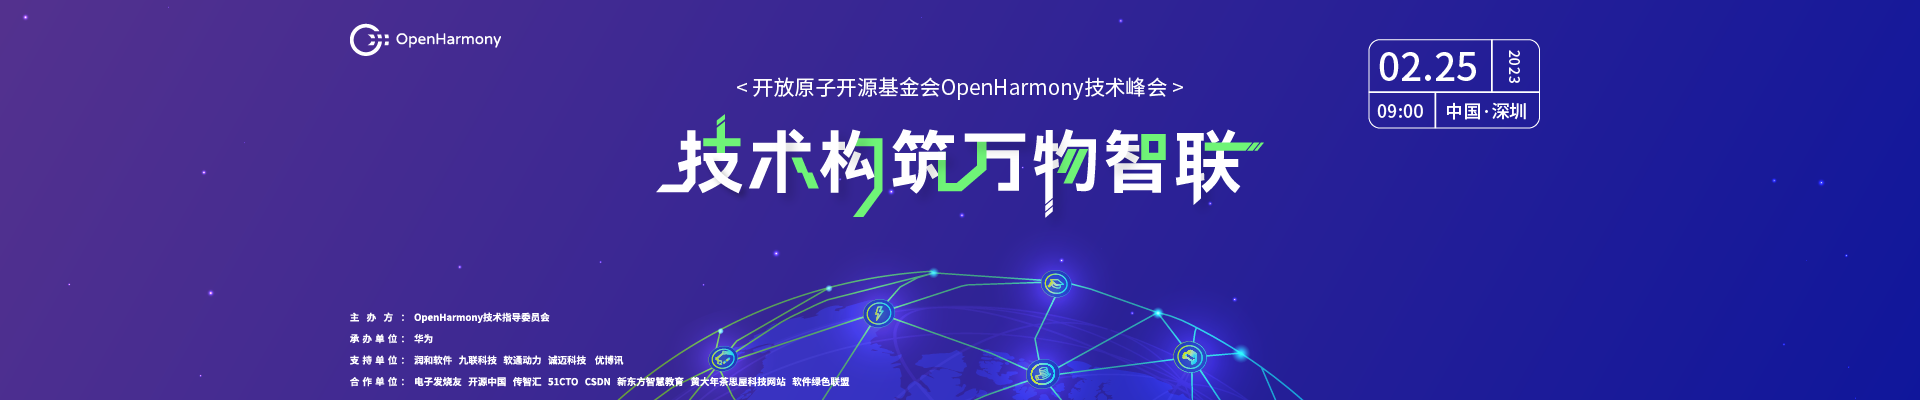 【限量赠票】开放原子开源基金会OpenHarmony技术峰会